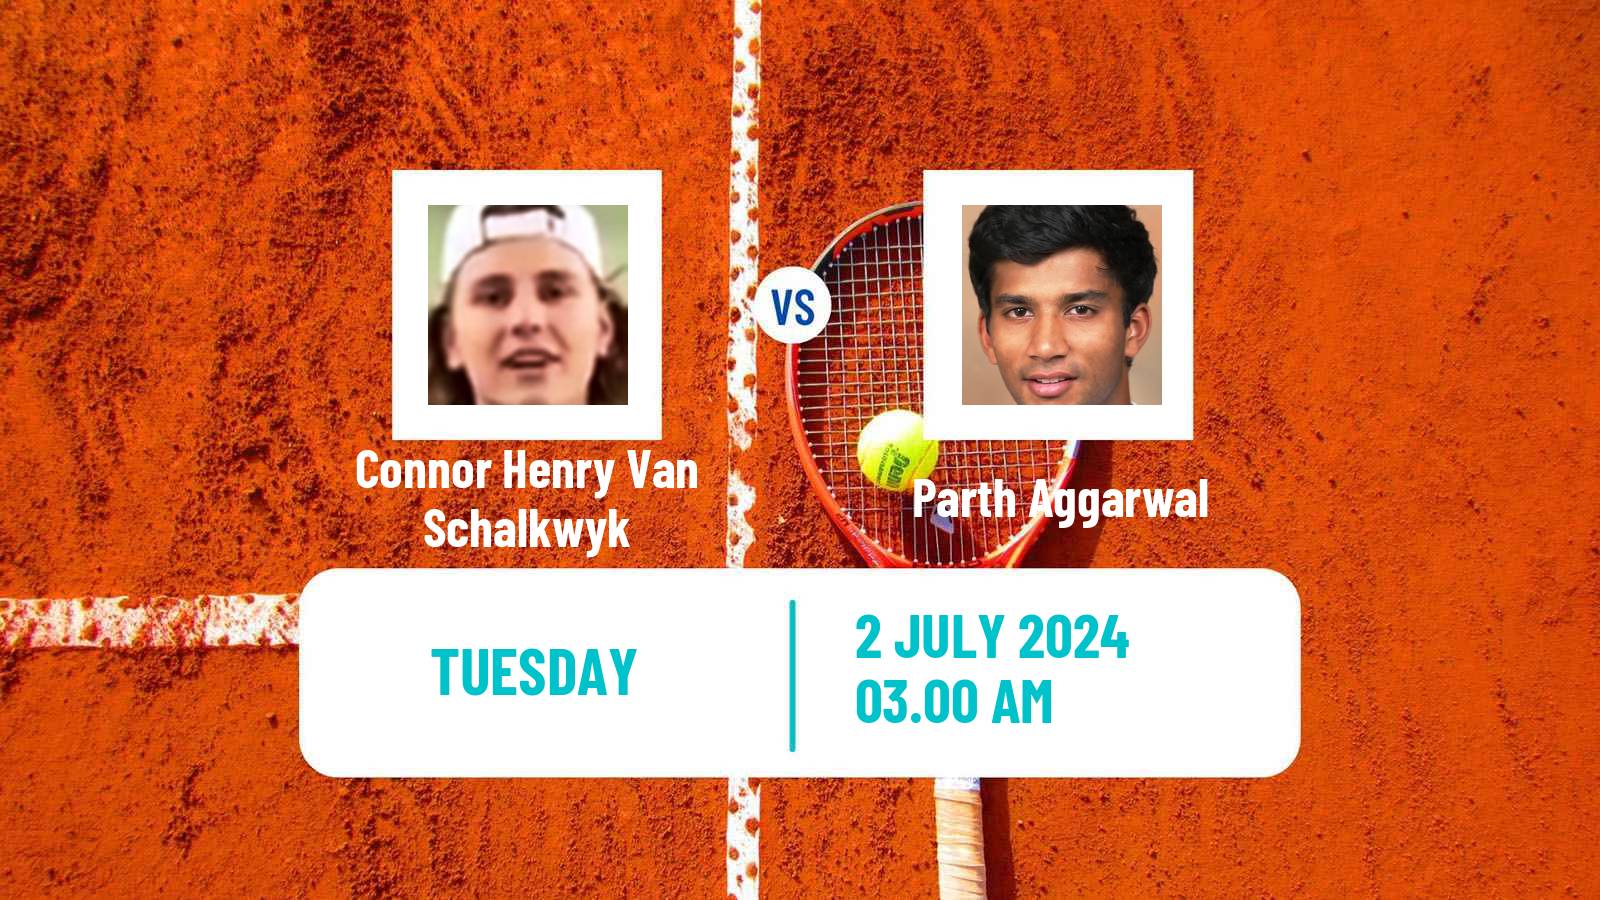 Tennis ITF M15 Hillcrest 2 Men Connor Henry Van Schalkwyk - Parth Aggarwal